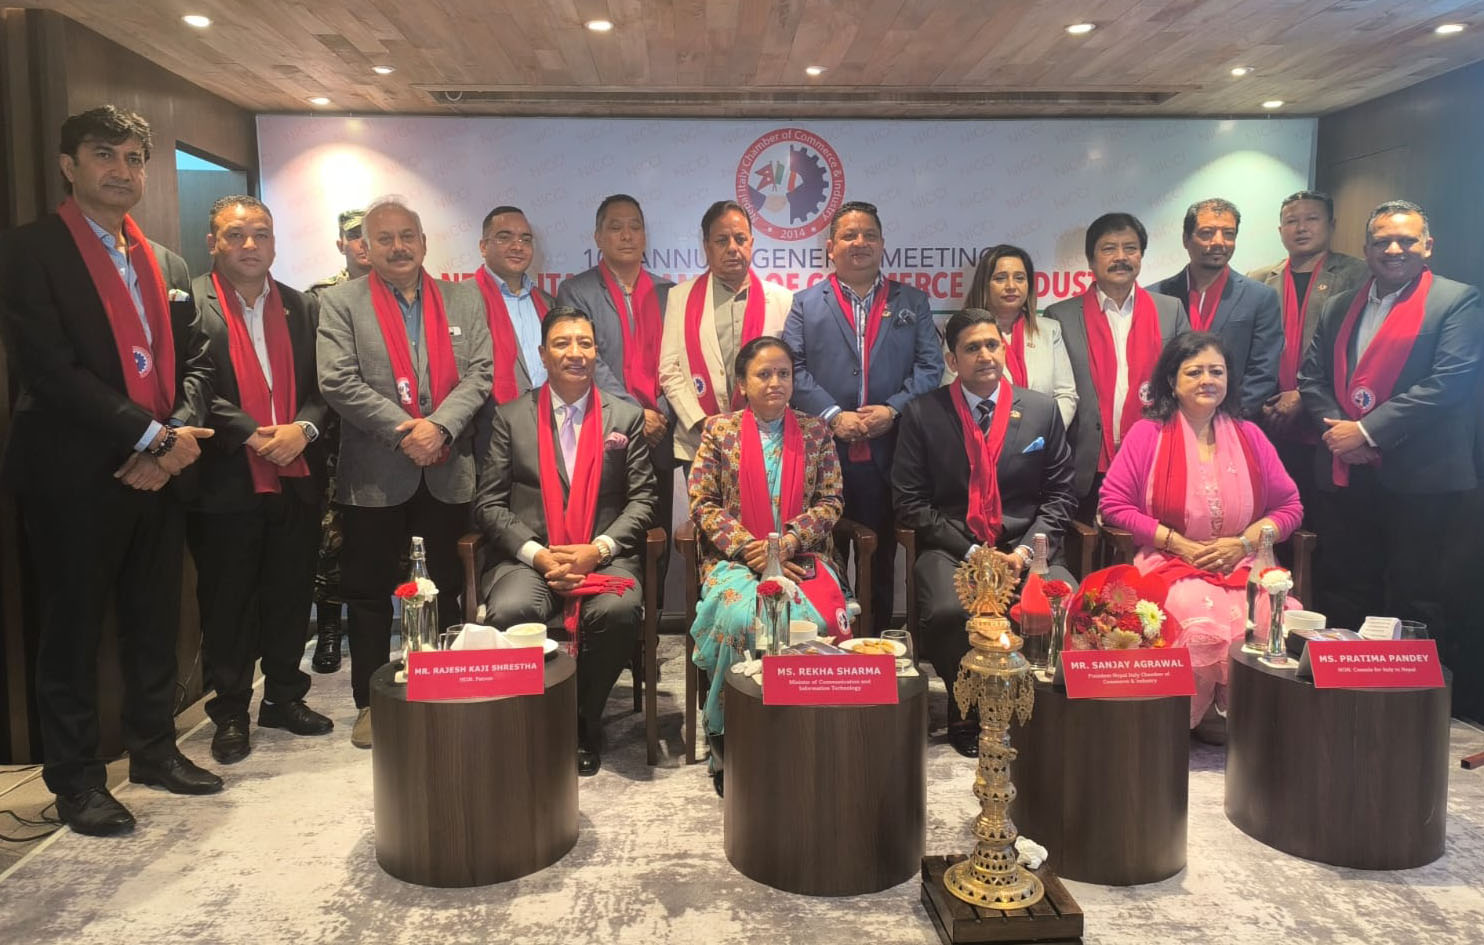 नेपाल इटाली चेम्बर अफ कमर्सको दशौँ वार्षिक साधारण सभा सम्पन्न